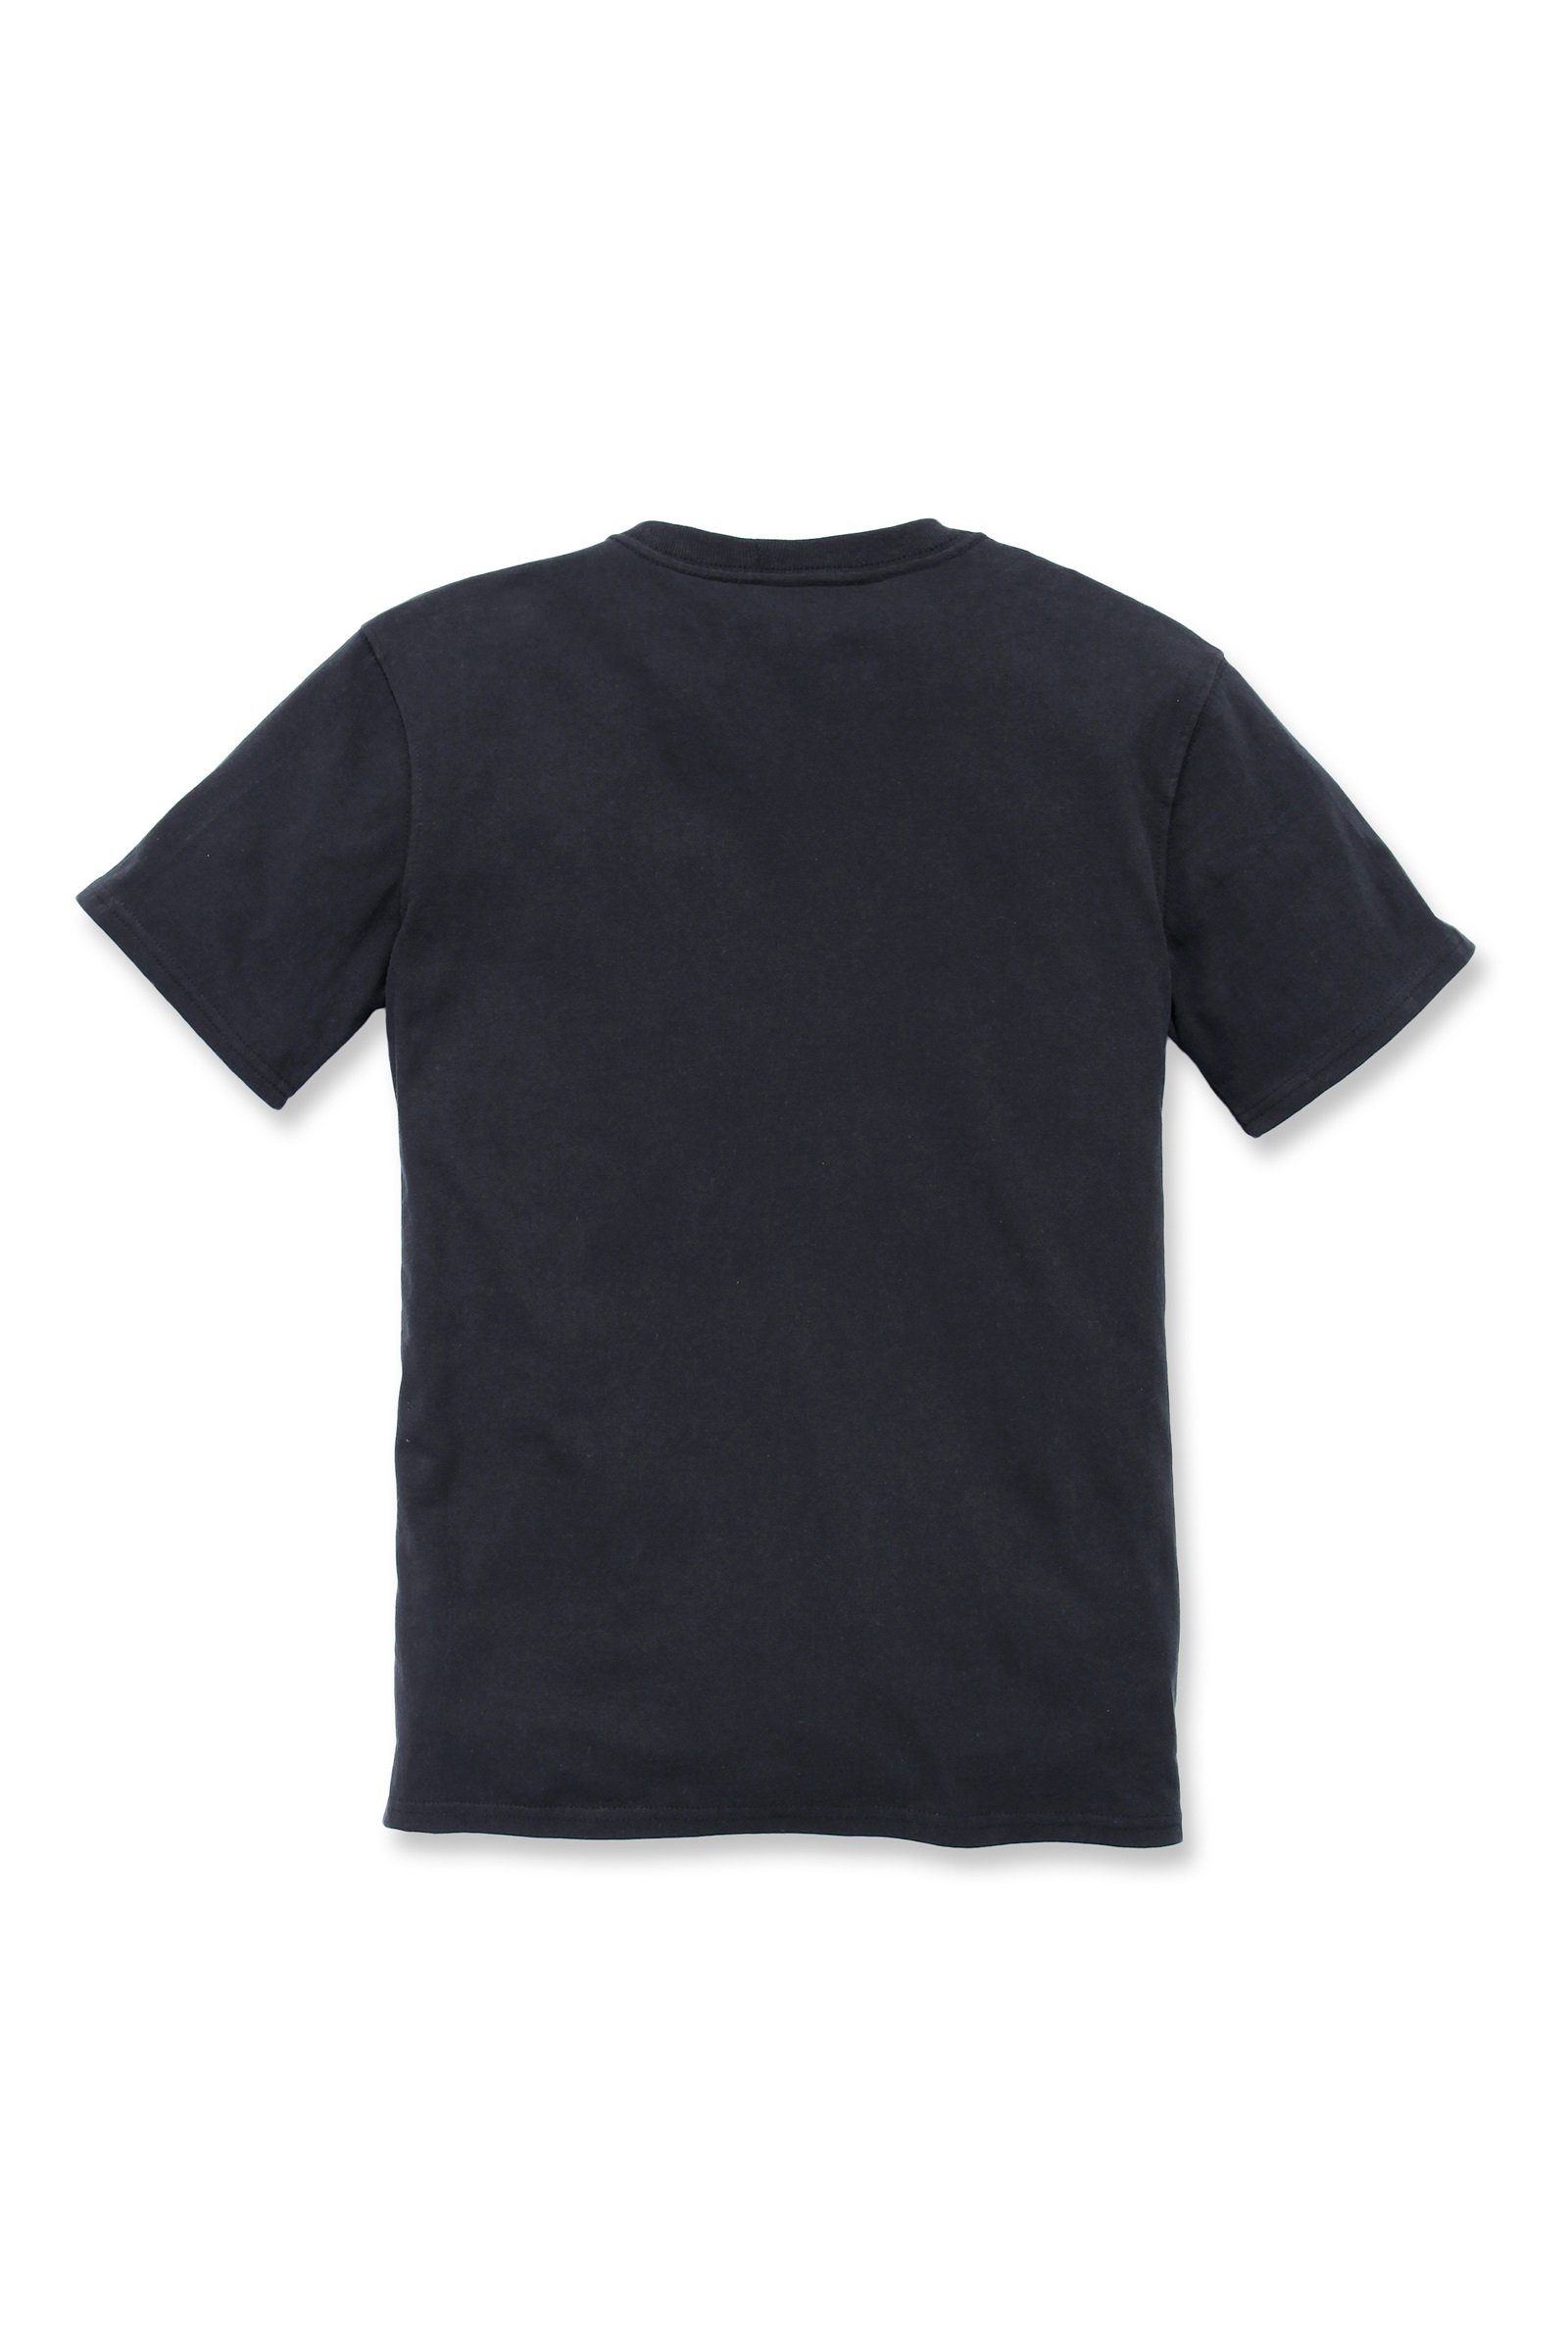 T-Shirt Adult T-Shirt Carhartt Loose Short-Sleeve Carhartt black Fit Damen Pocket Heavyweight